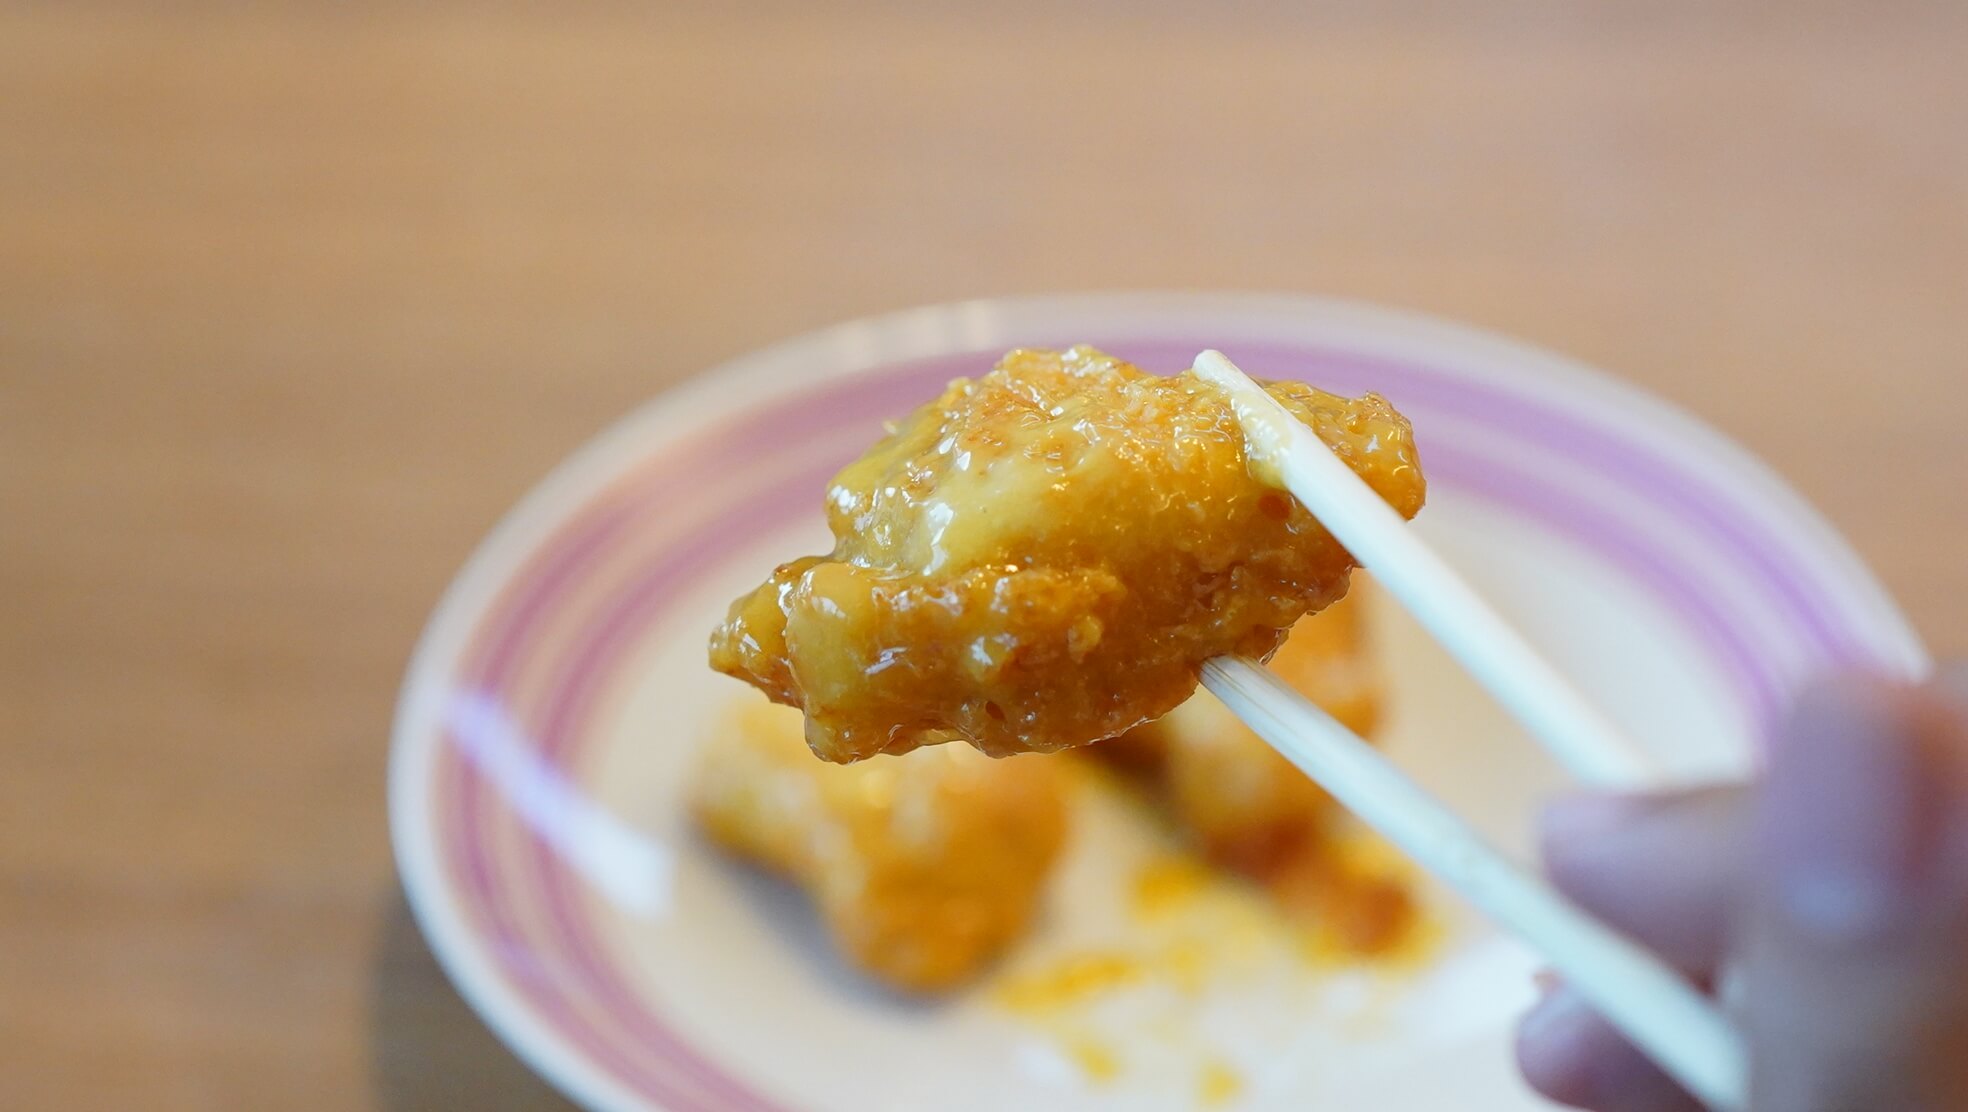 ニチレイの冷凍食品「ハニーマスタードチキン」を箸で持ち上げている写真